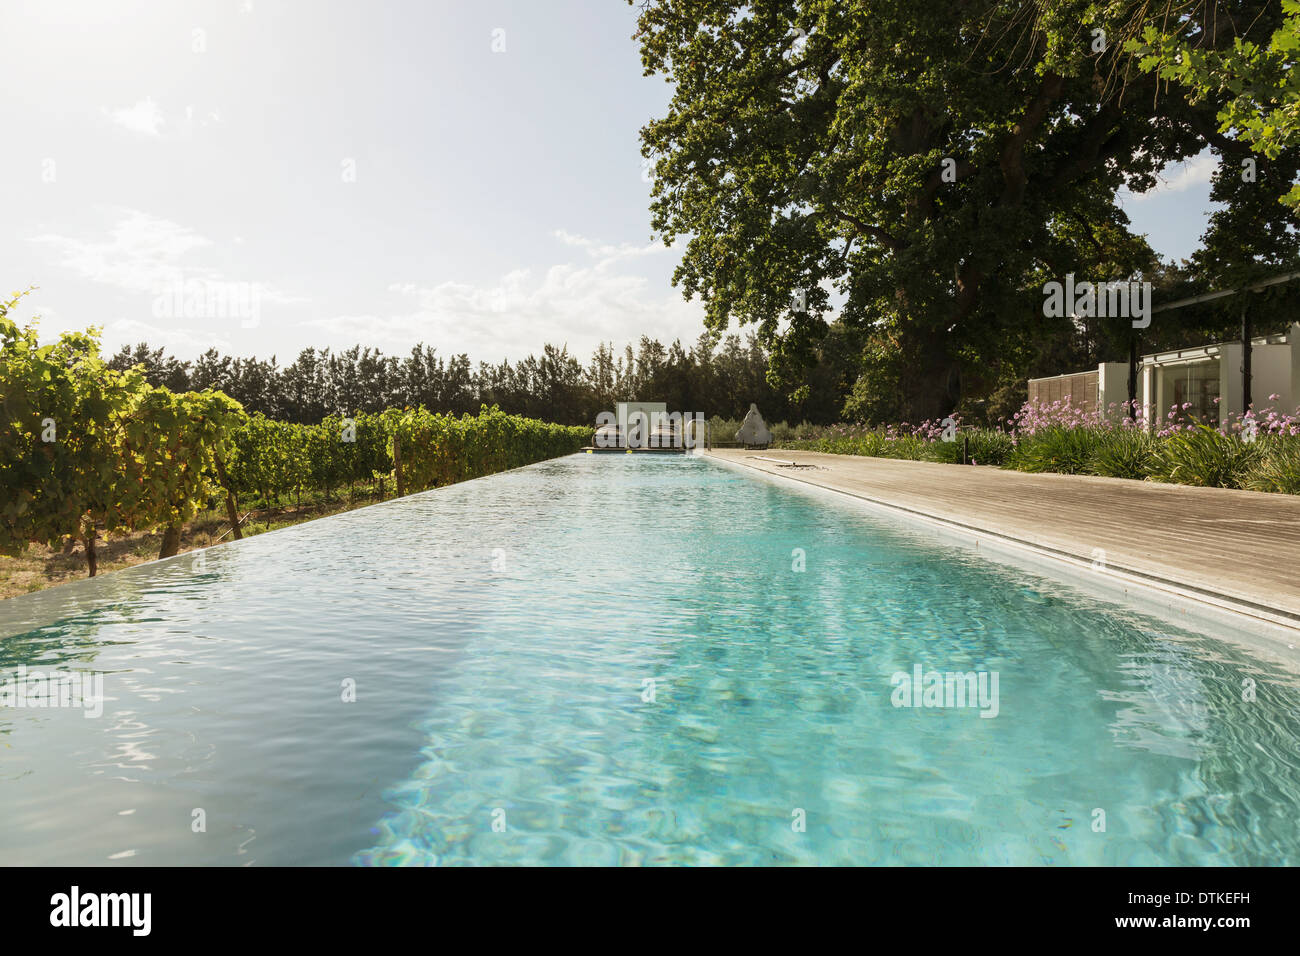 Luxury lap pool among vineyard Stock Photo